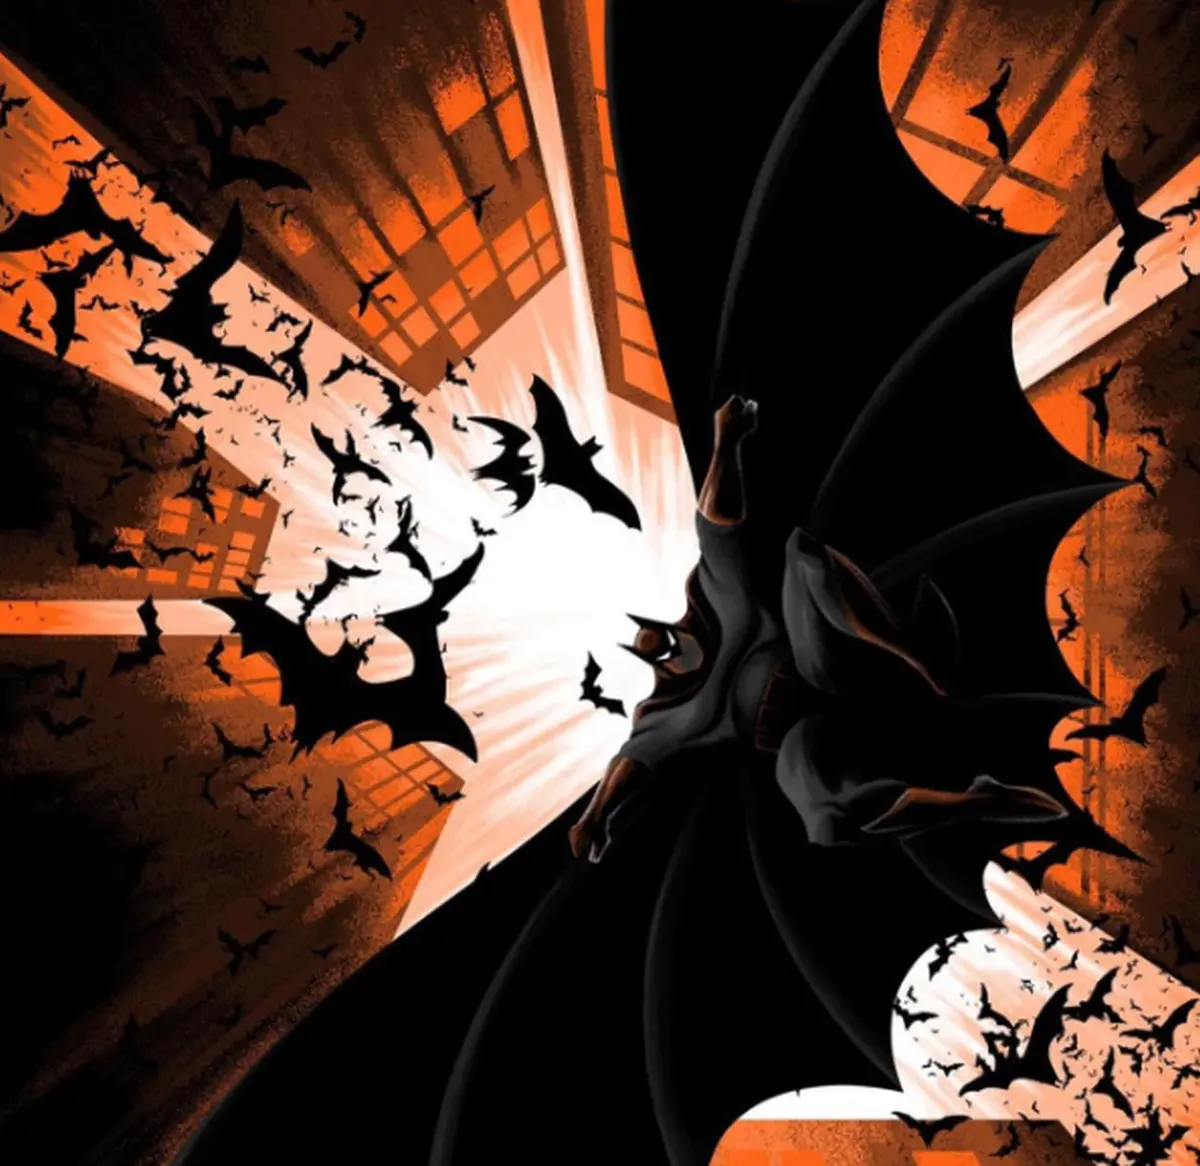 The Dark Knight fan art